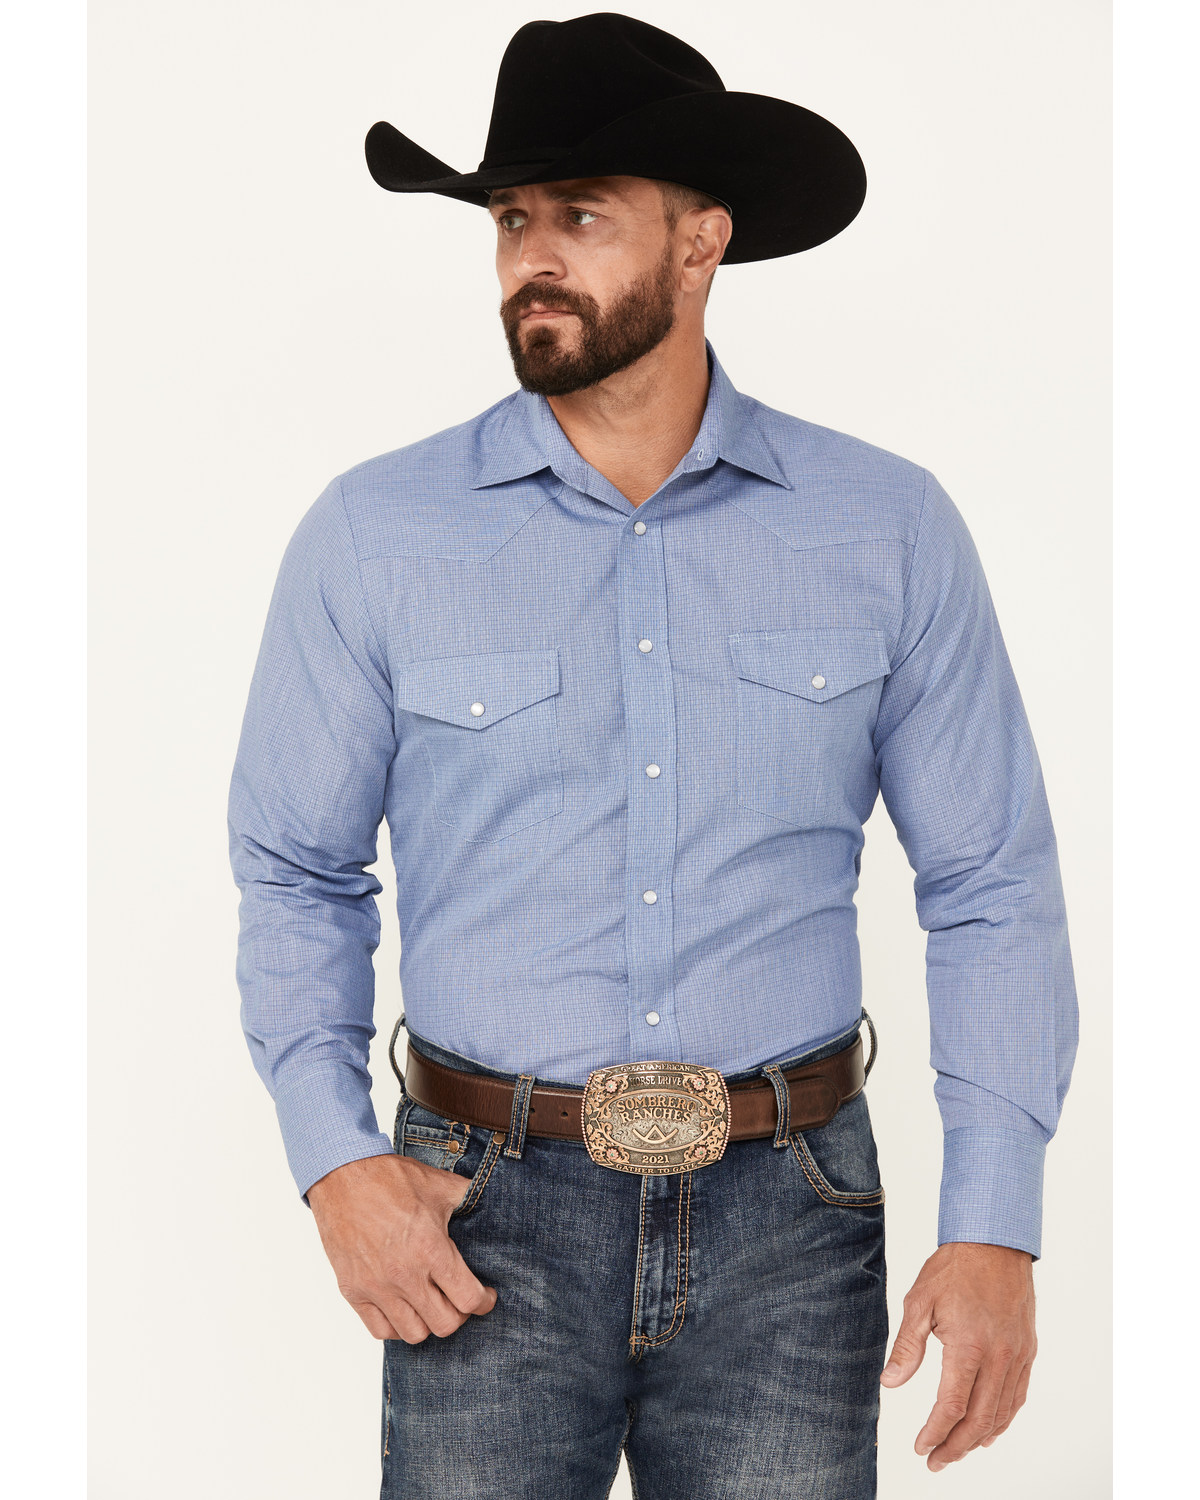 Roper Men's Printed Long Sleeve Pearl Snap Western Shirt